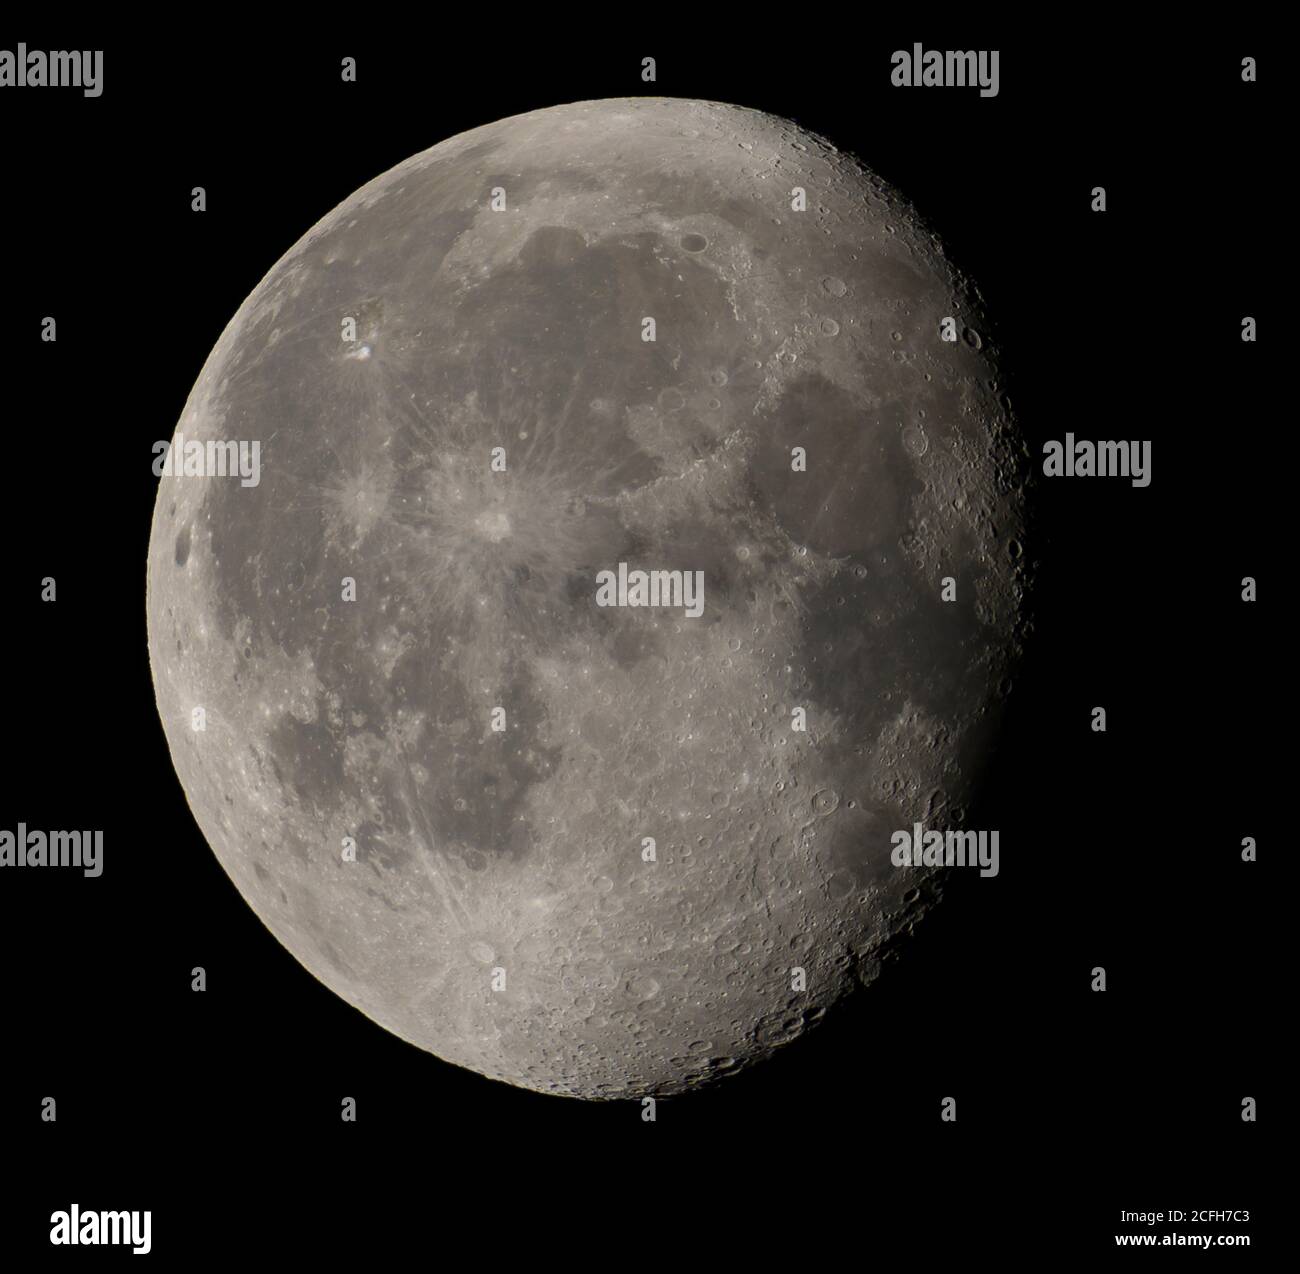 Londres, Royaume-Uni. 5 septembre 2020. La planète Mars apparaît près de la Lune avec une occultation visible depuis le sud de l'Europe. La lune de maïs Gibbous en déclin semble illuminée à 90 % ce soir dans un ciel dégagé au-dessus de Londres. Crédit : Malcolm Park/Alay Live News Banque D'Images